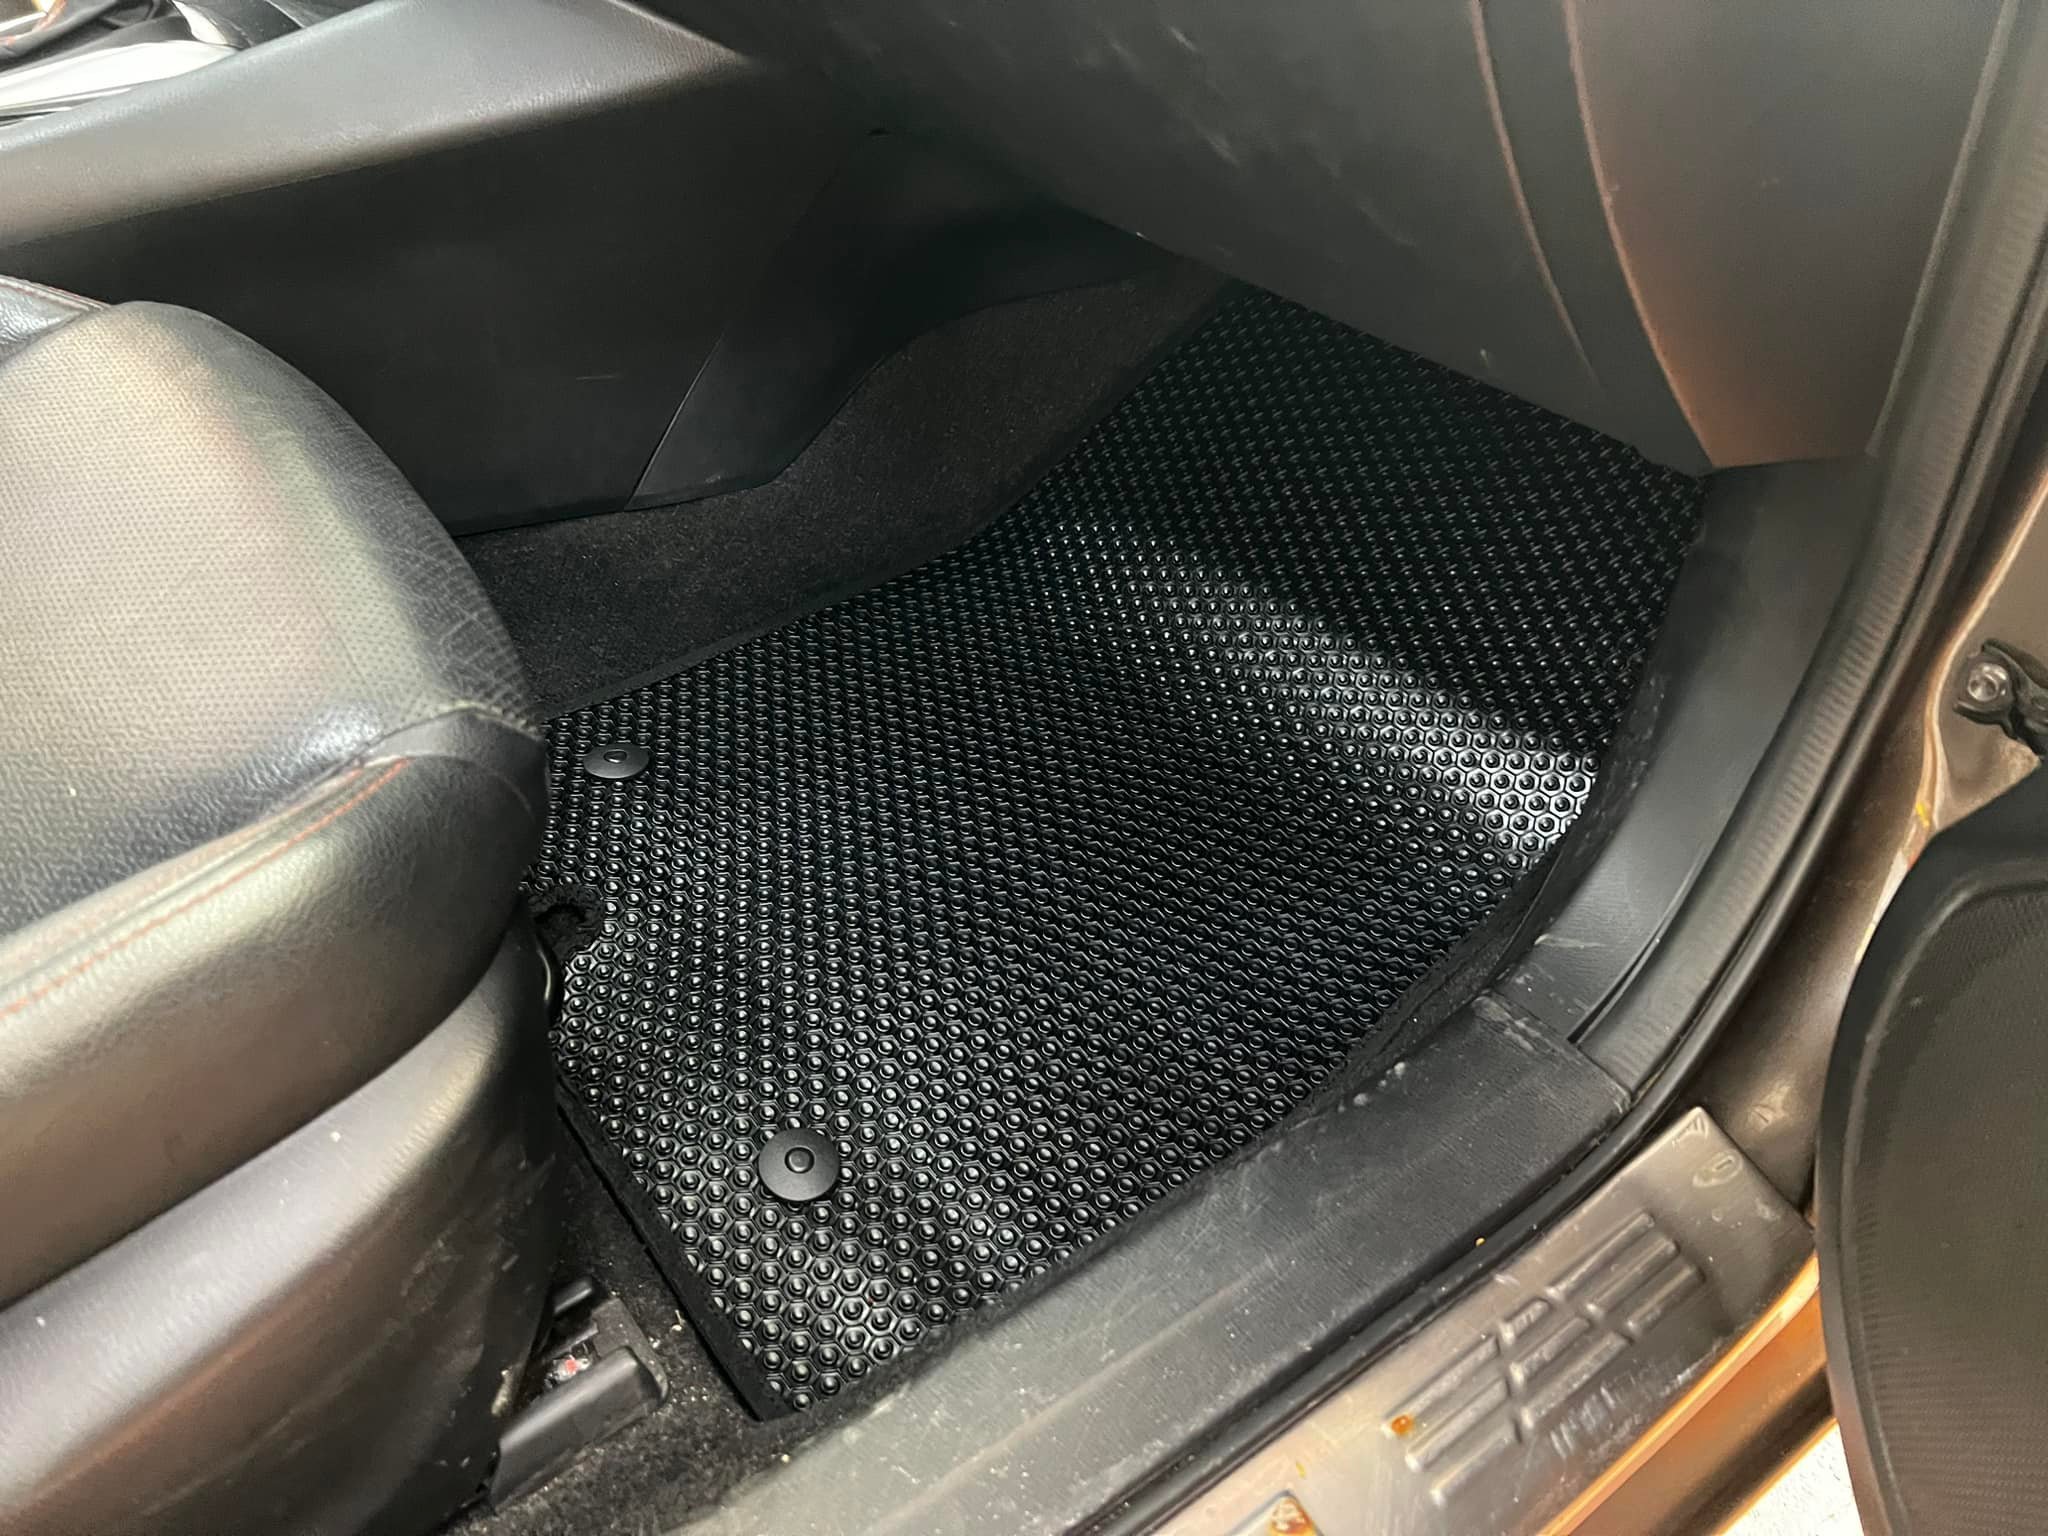 Thảm lót sàn ô tô KATA cho xe Mazda 3 (2013 - 2019) - Khít với sàn xe, Chống trơn, Không mùi, Không ẩm mốc